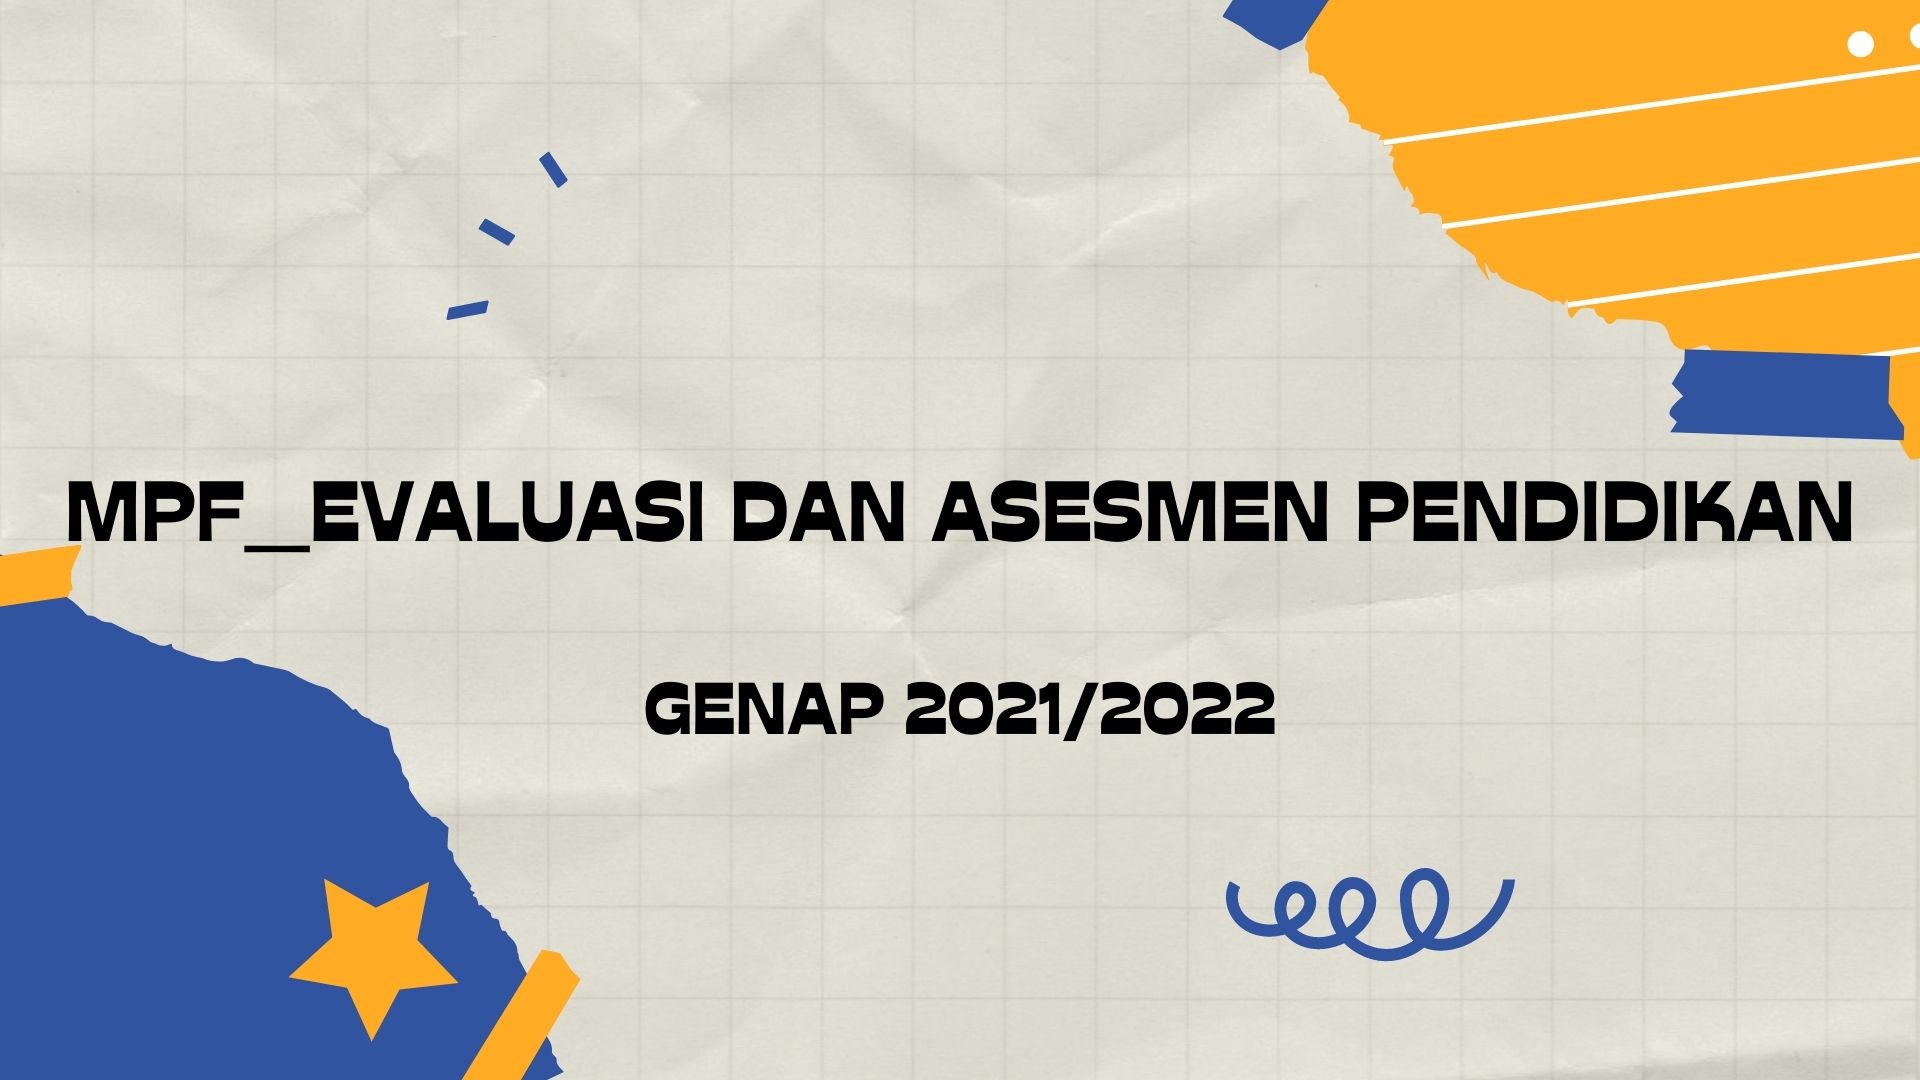 MPF_EVALUASI DAN ASESMEN PENDIDIKAN_Genap 2021/2022